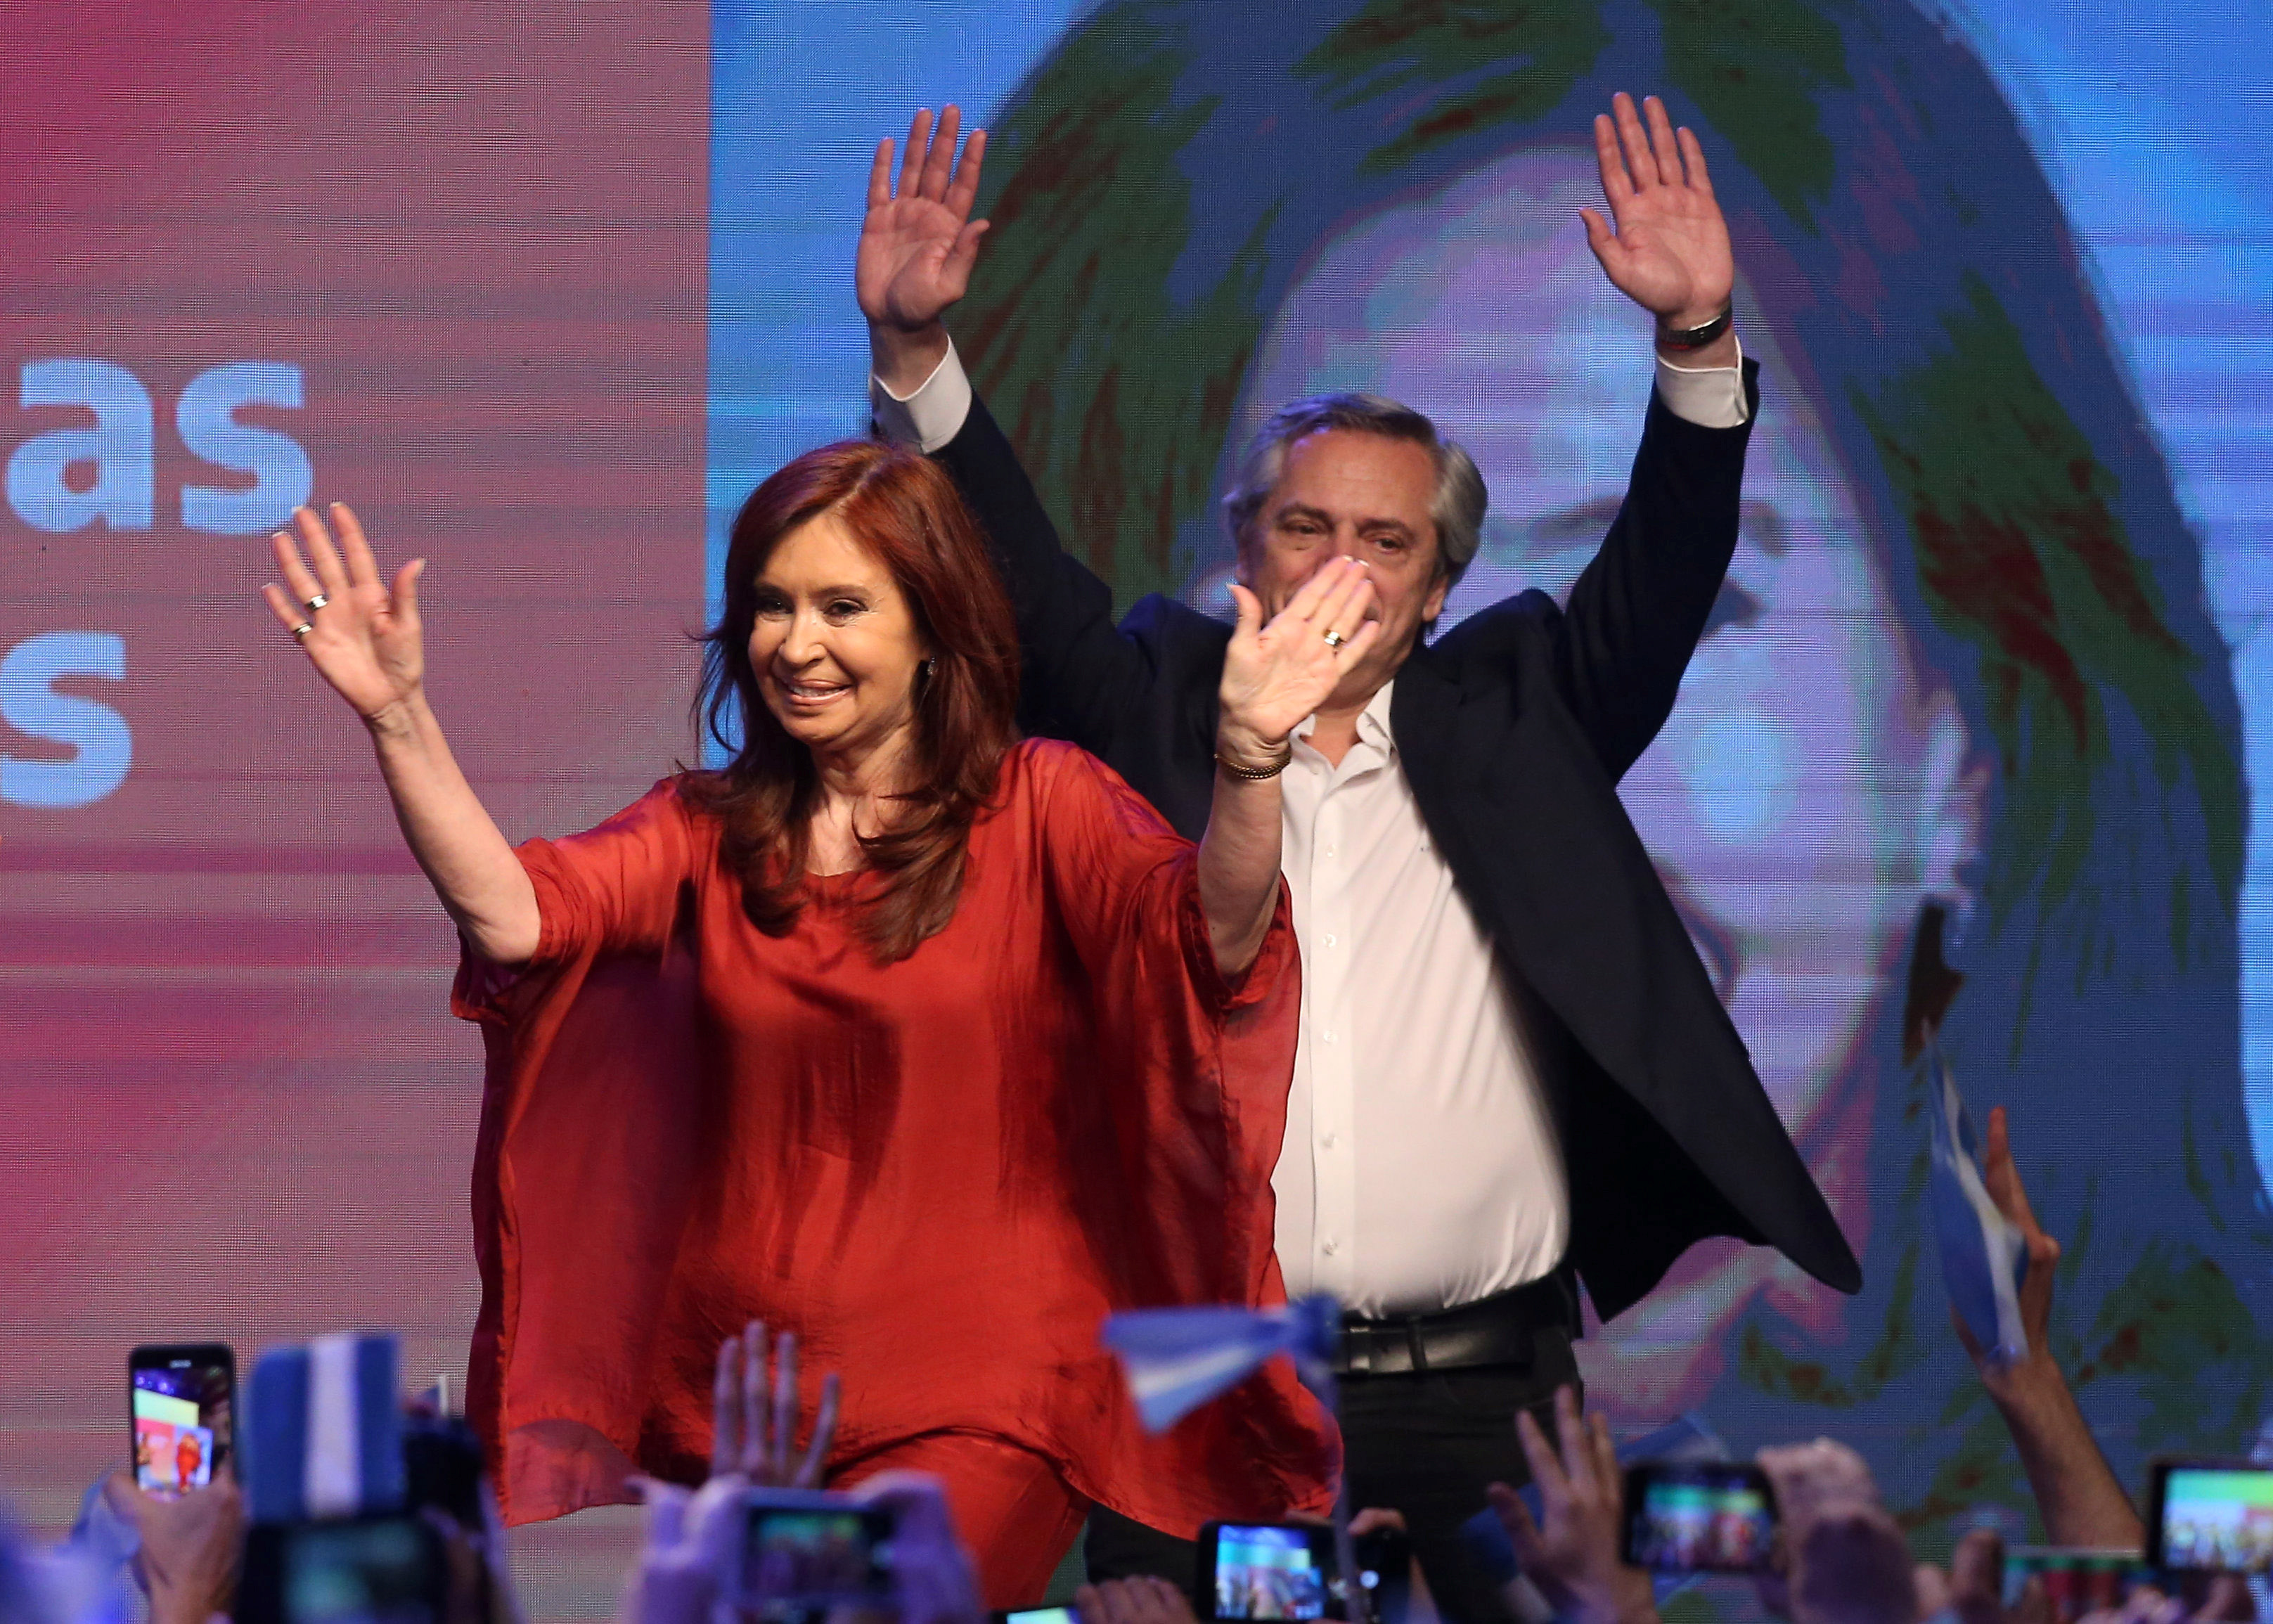 “Argentina igualitaria”, la etérea promesa de Alberto Fernández tras ganar las elecciones